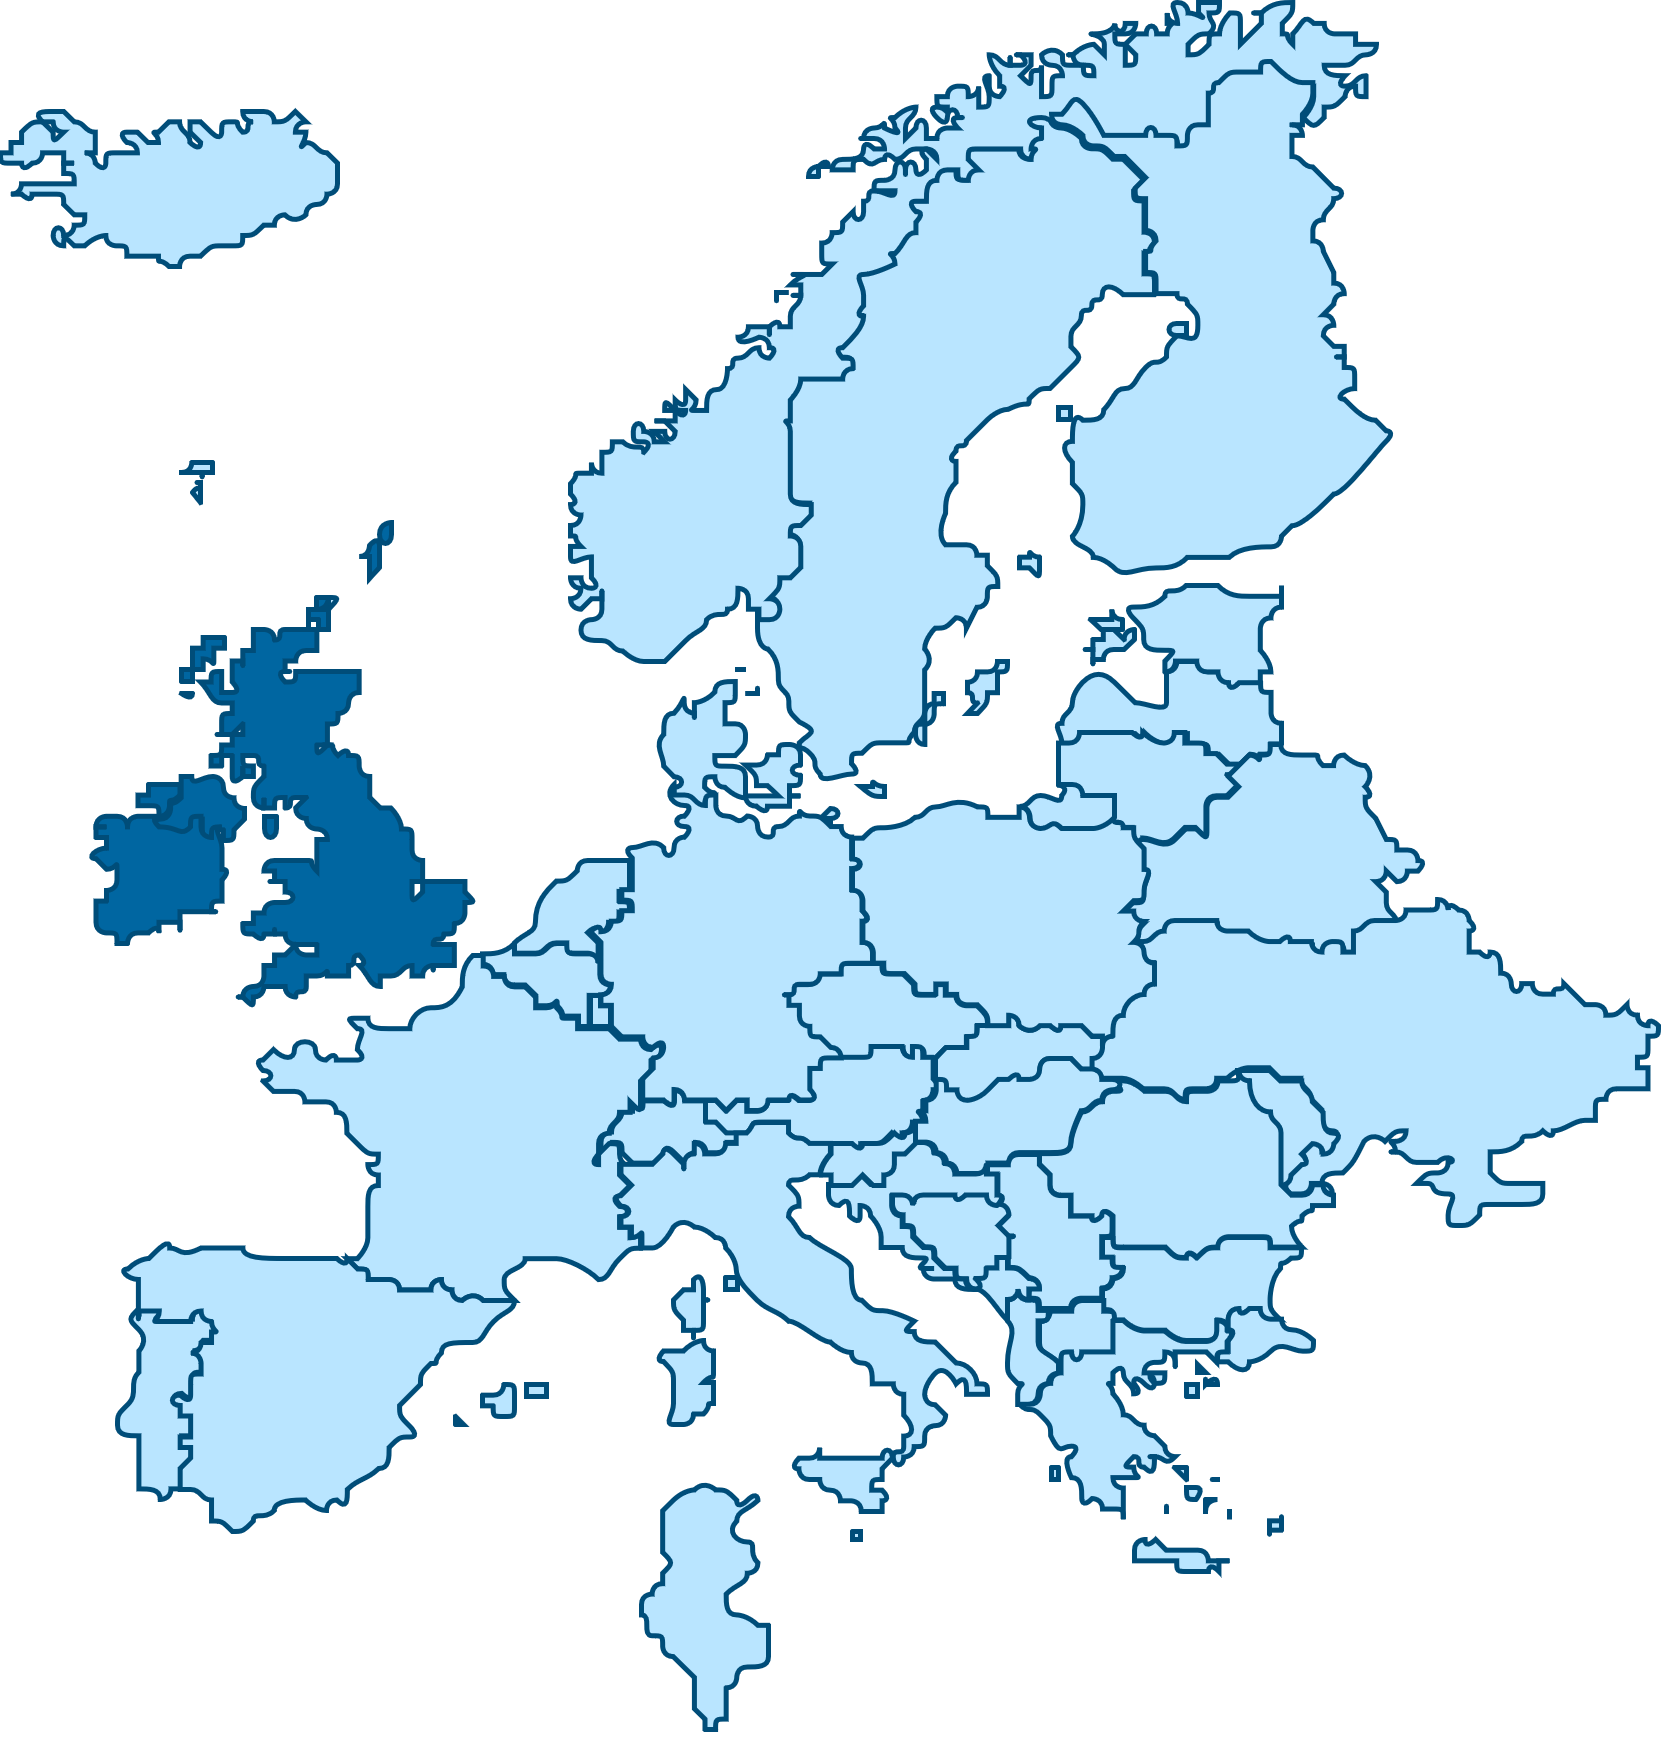 Europe, UK & Ireland